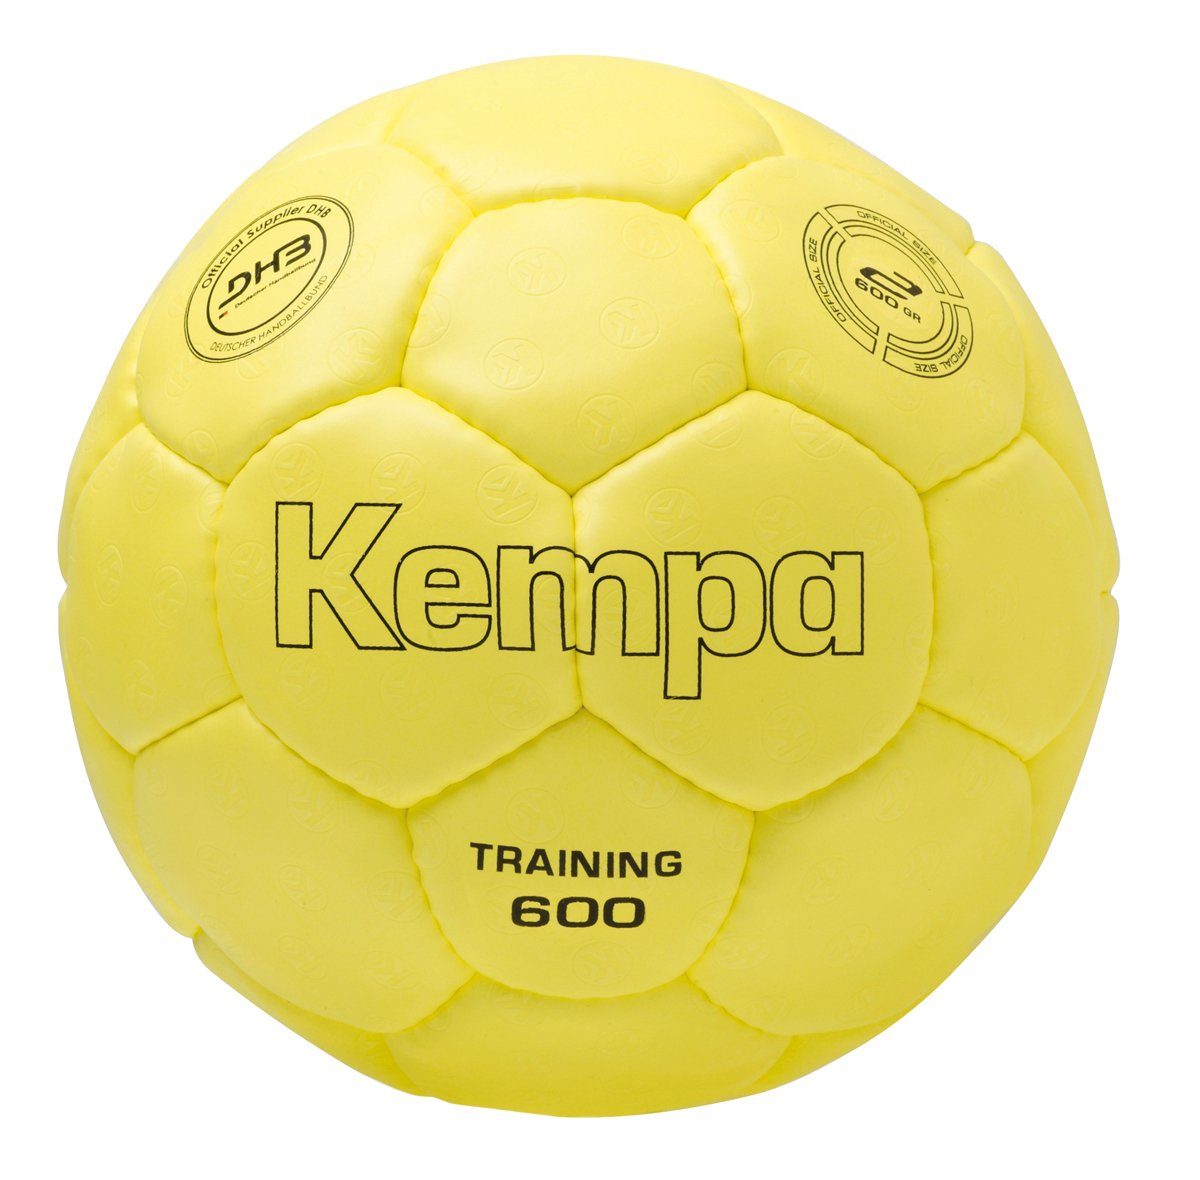 Kempa Handball Kempa Handball TRAINING 600 GRAMM | Handbälle